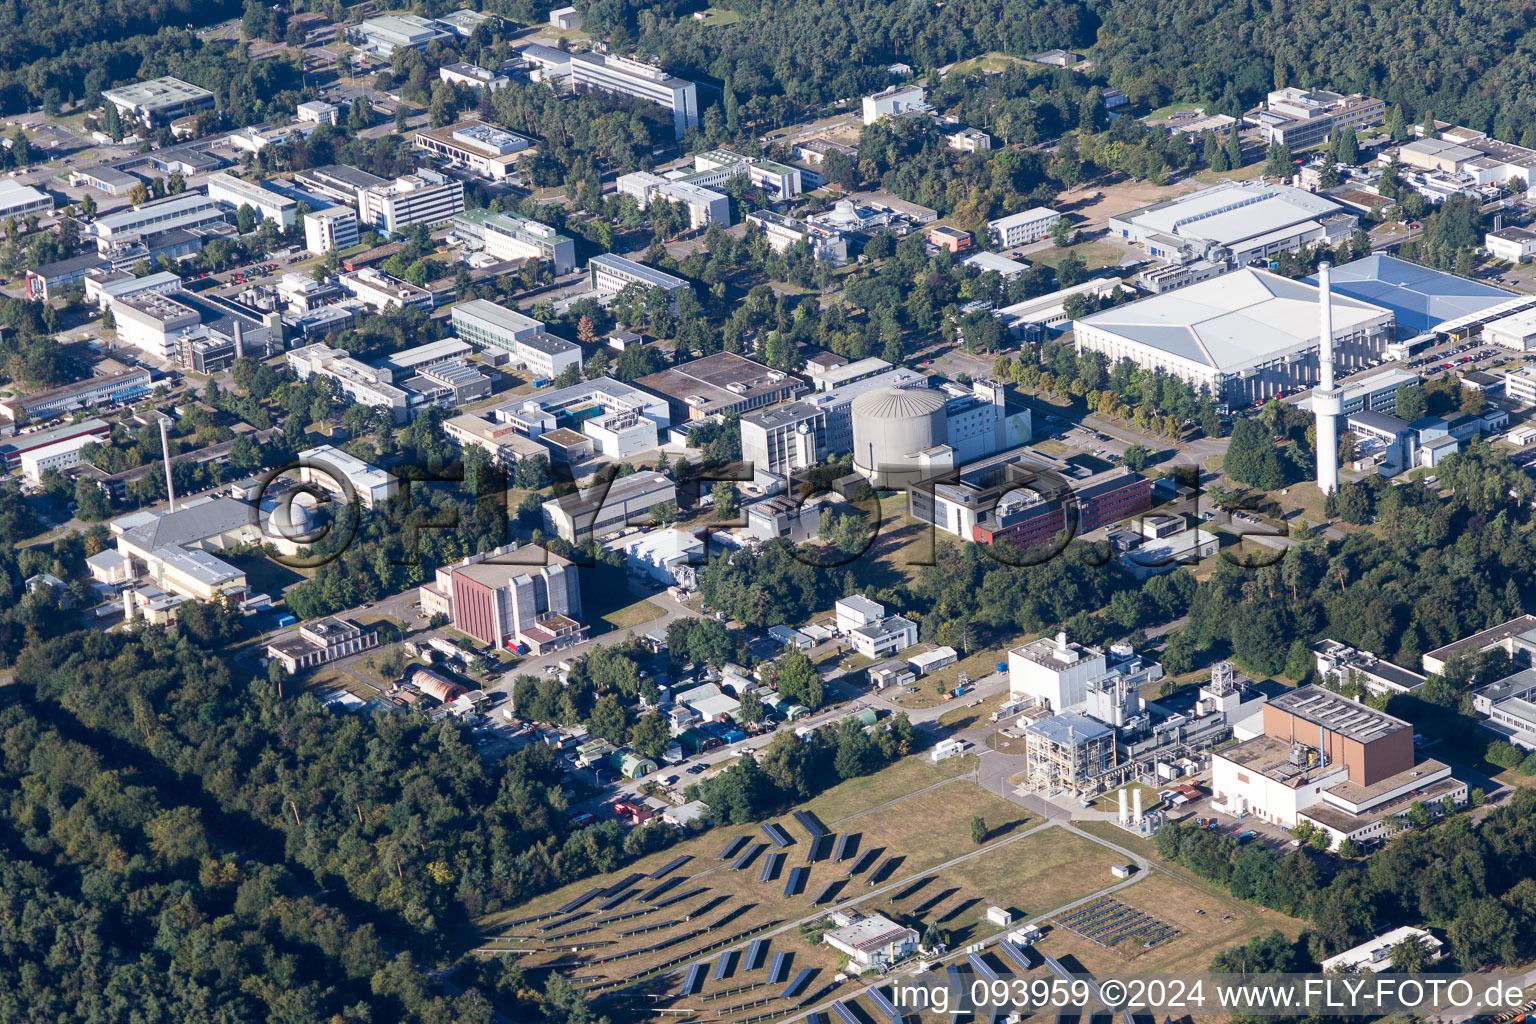 Campus University KIT - Campus Nord (ancien Centre de Recherche Nucléaire de Karlsruhe) à le quartier Leopoldshafen in Eggenstein-Leopoldshafen dans le département Bade-Wurtemberg, Allemagne d'en haut